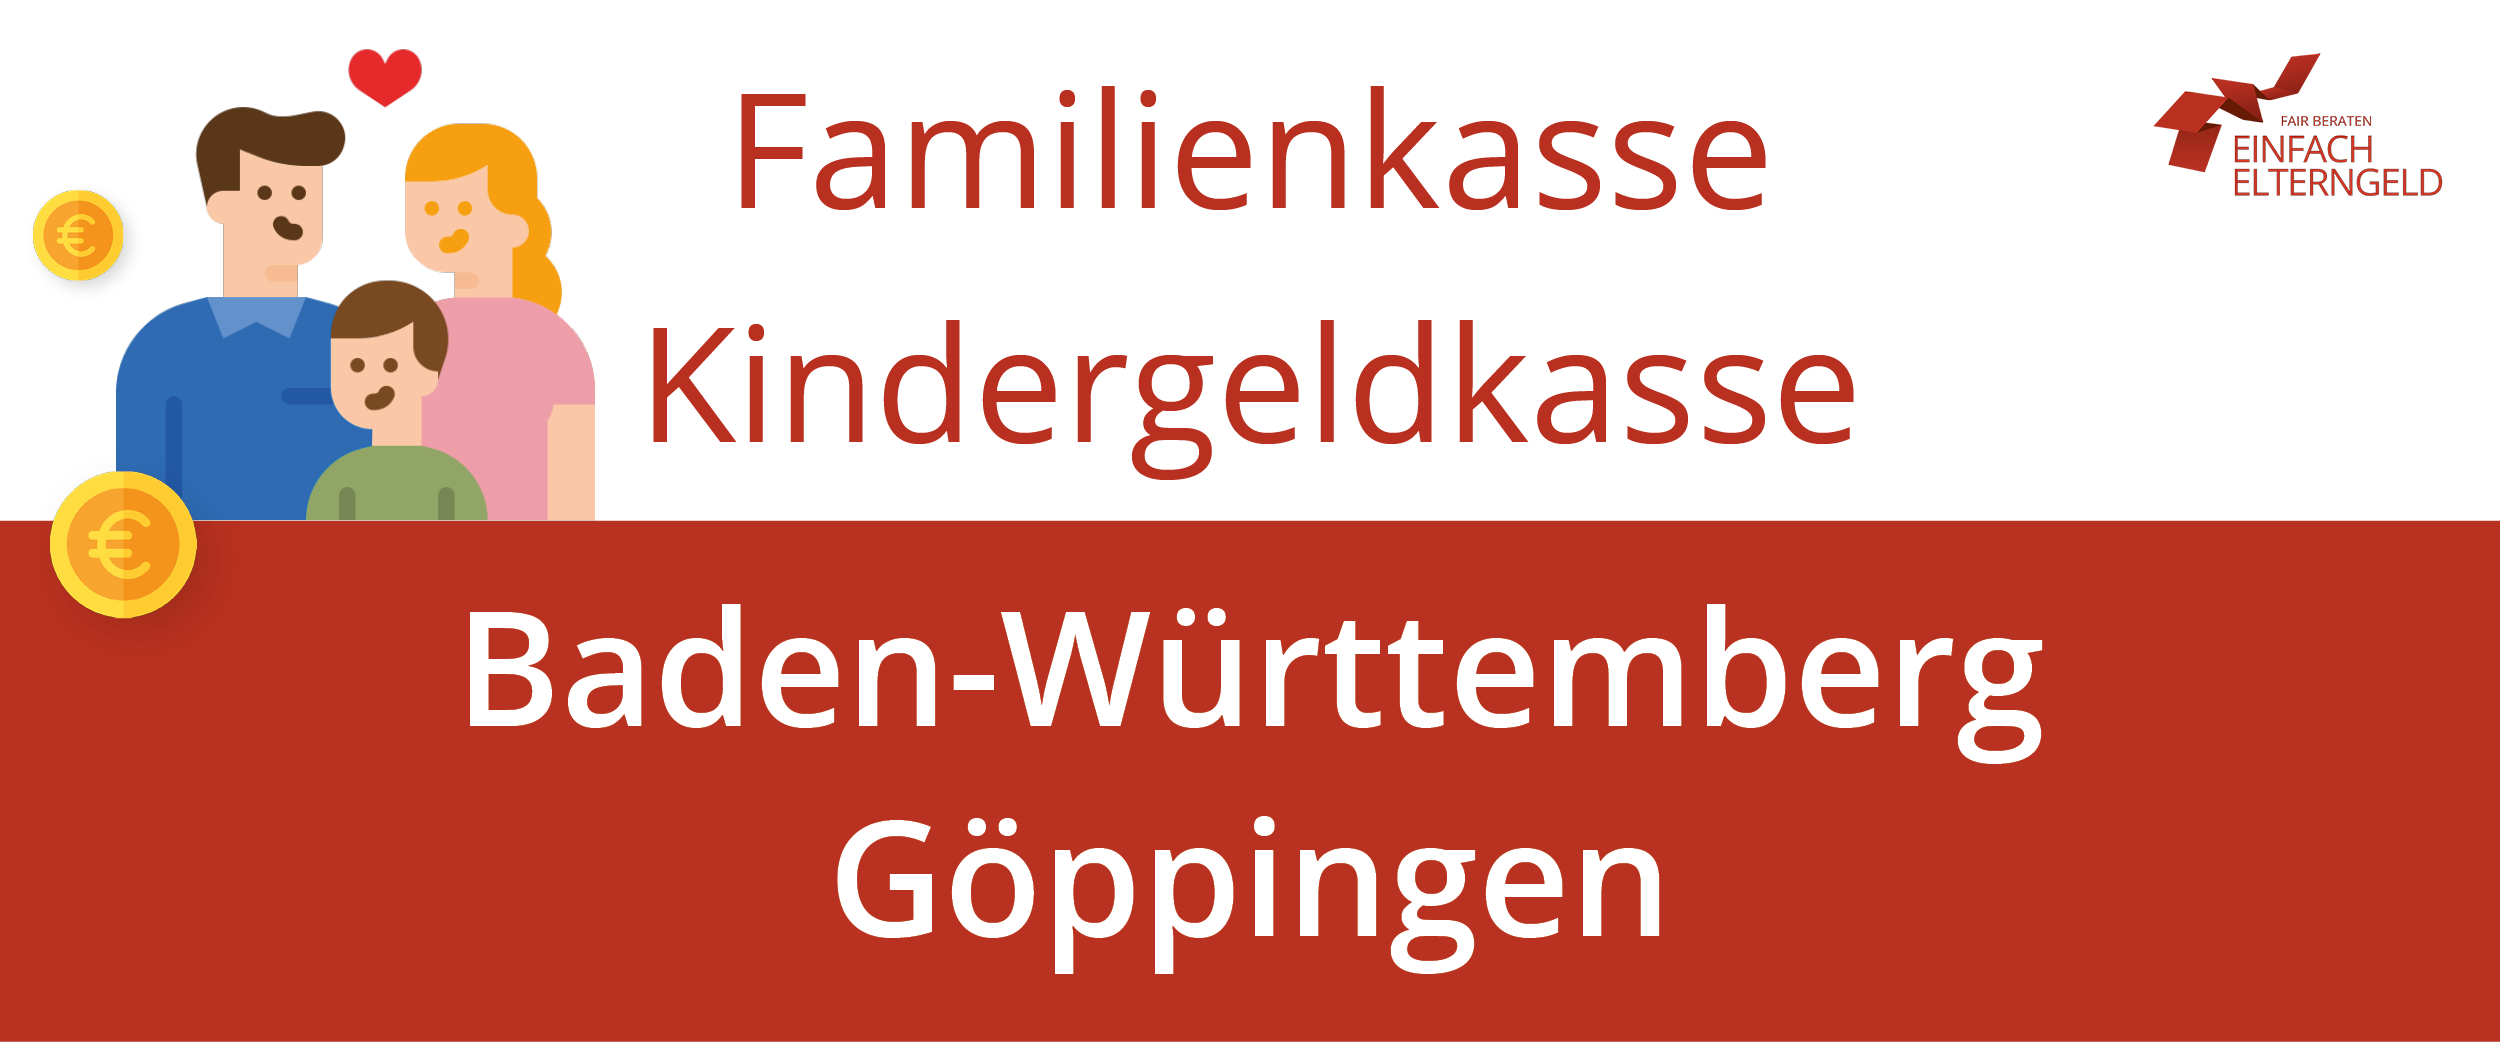 Familienkasse Kindergeldkasse Baden-Württemberg Göppingen - Ihre Familienkasse kontaktieren.